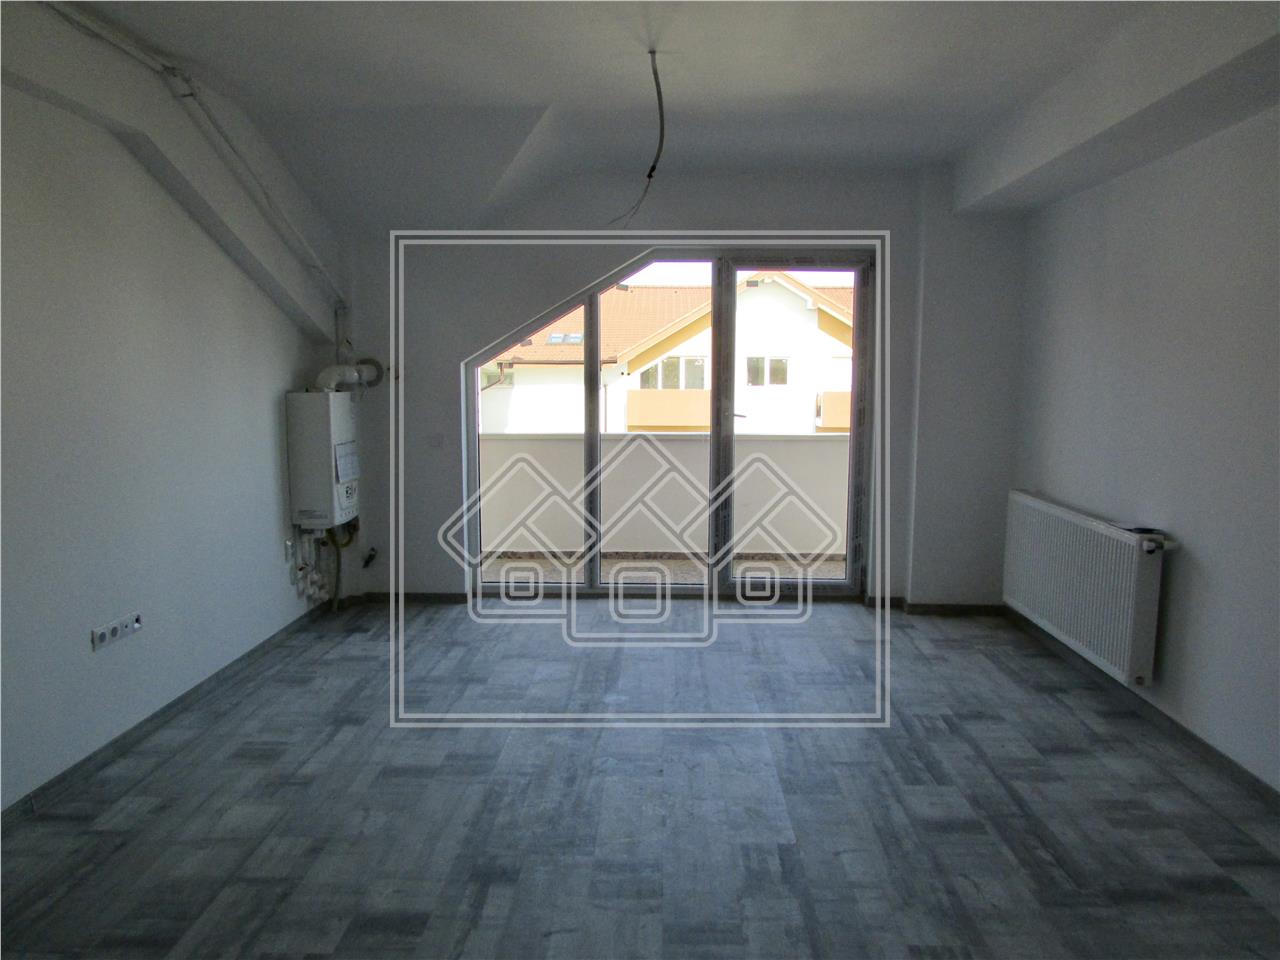 Apartament de vanzare in Sibiu - 3 camere si pod - finisat la cheie